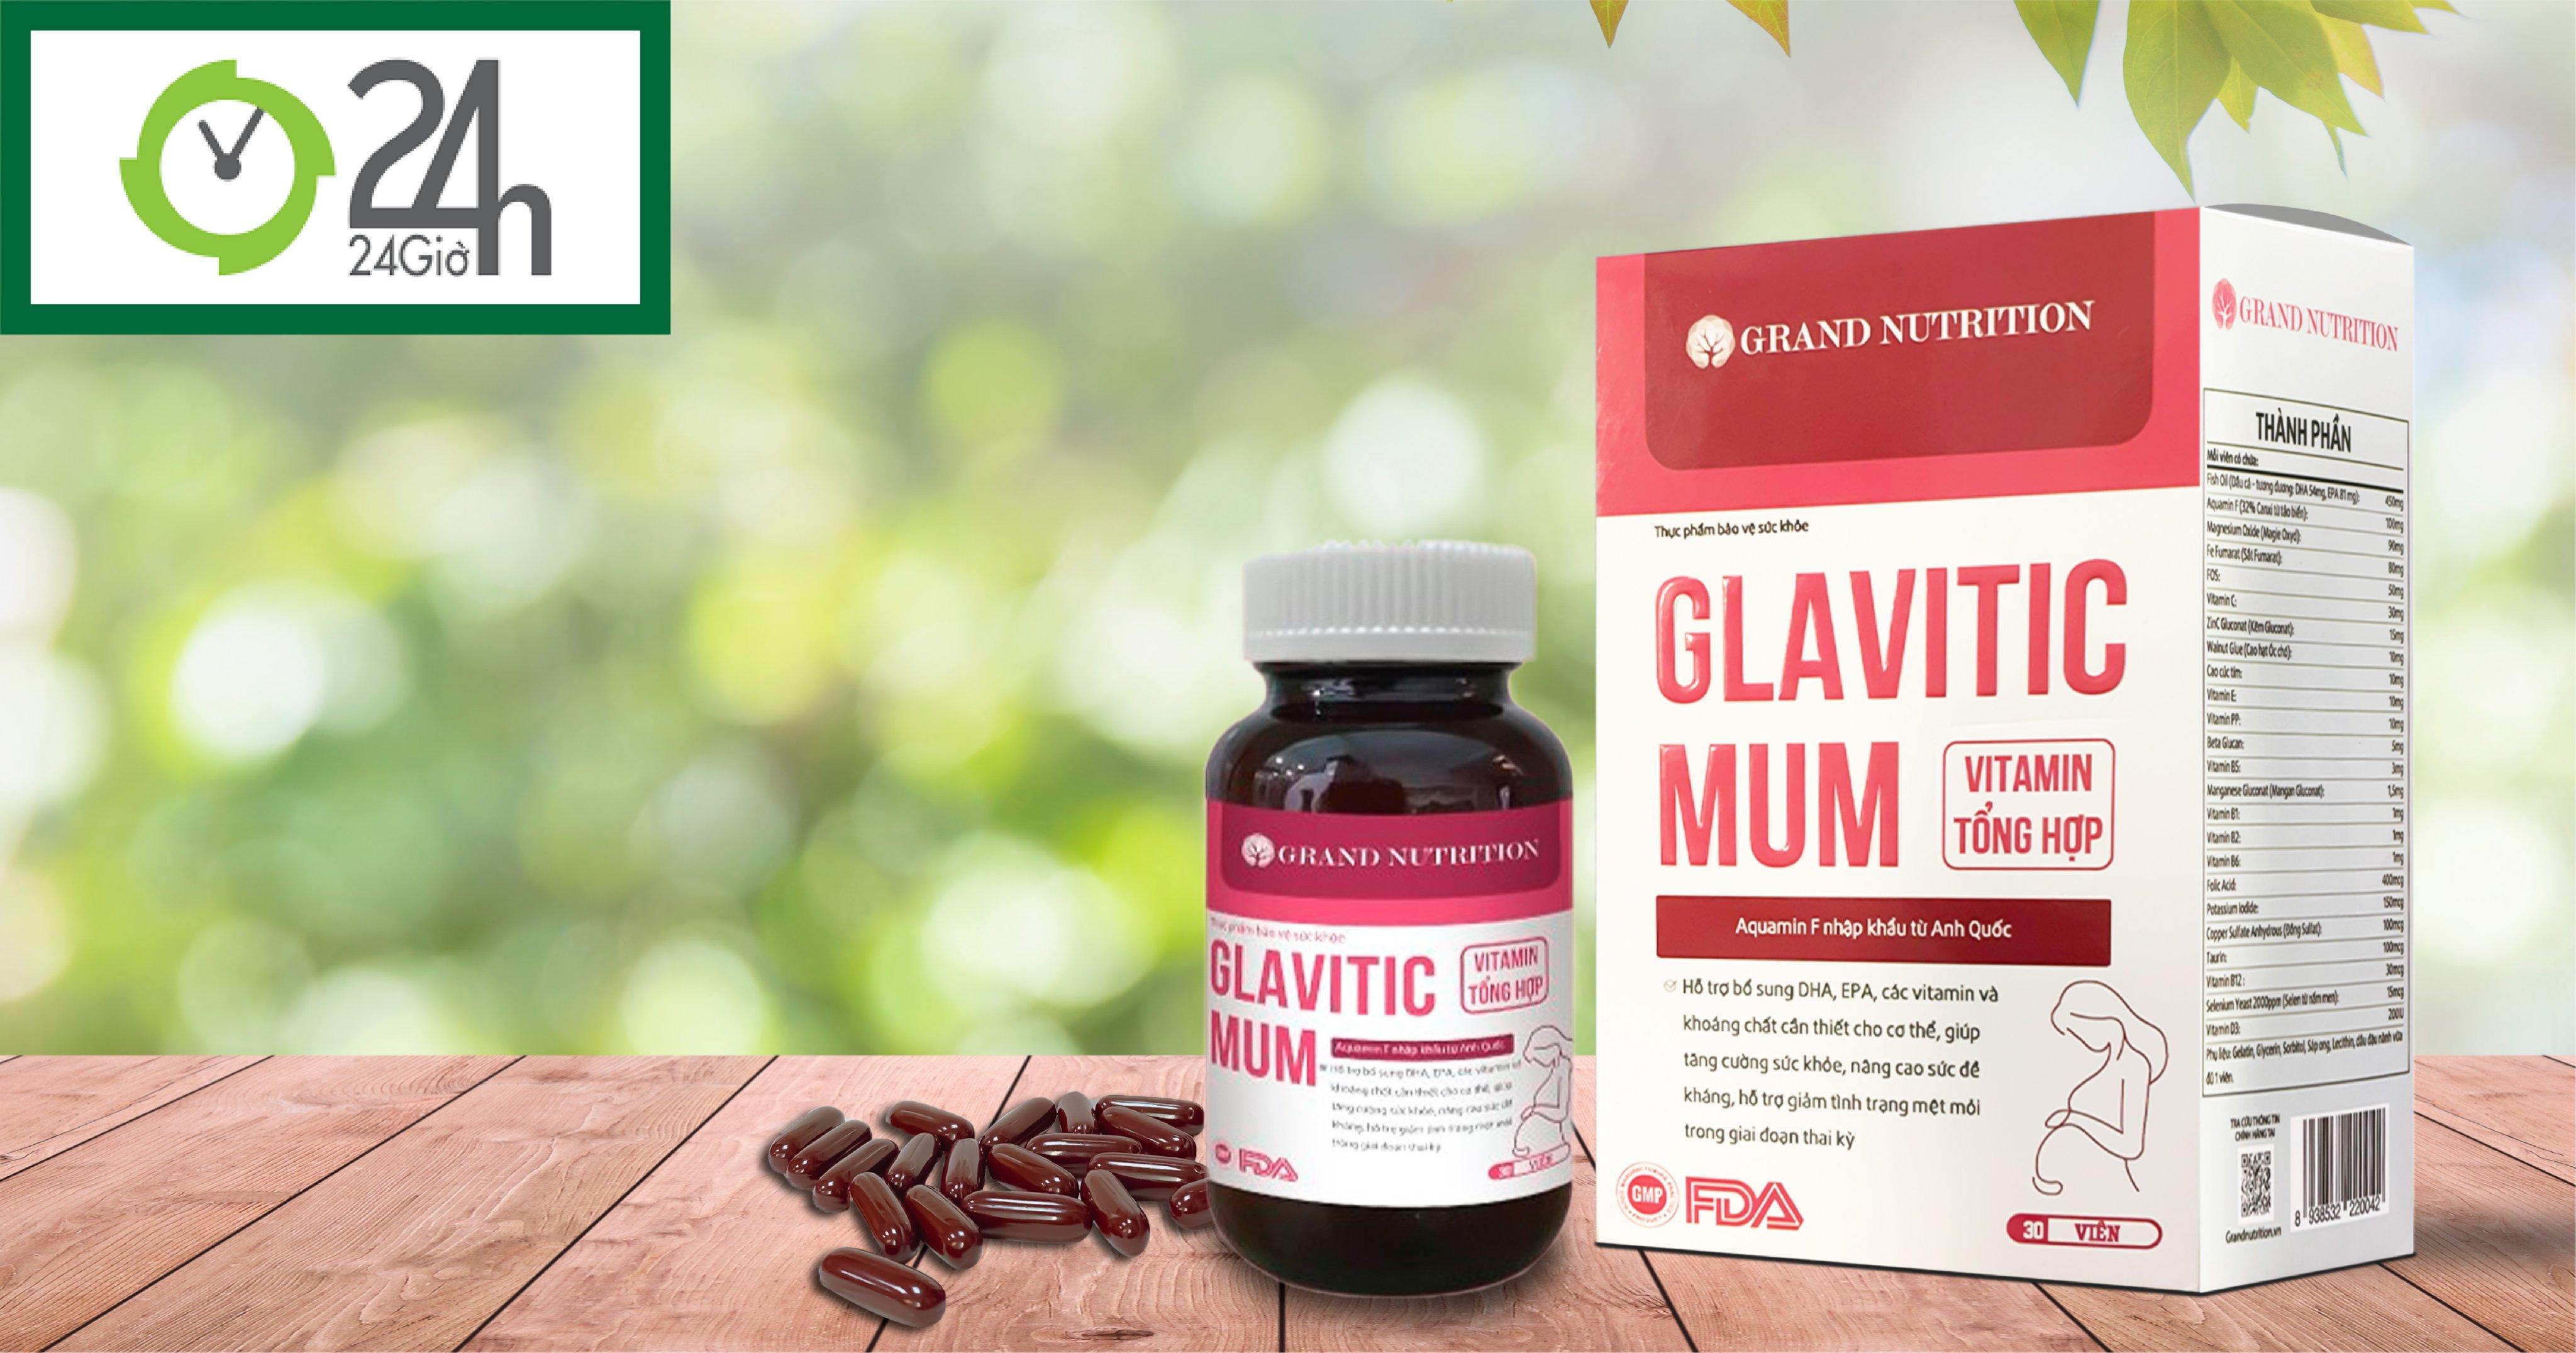 Glavitic Mum Vitamin tổng hợp mới: Bổ sung vi chất dinh dưỡng toàn diện cho bà bầu